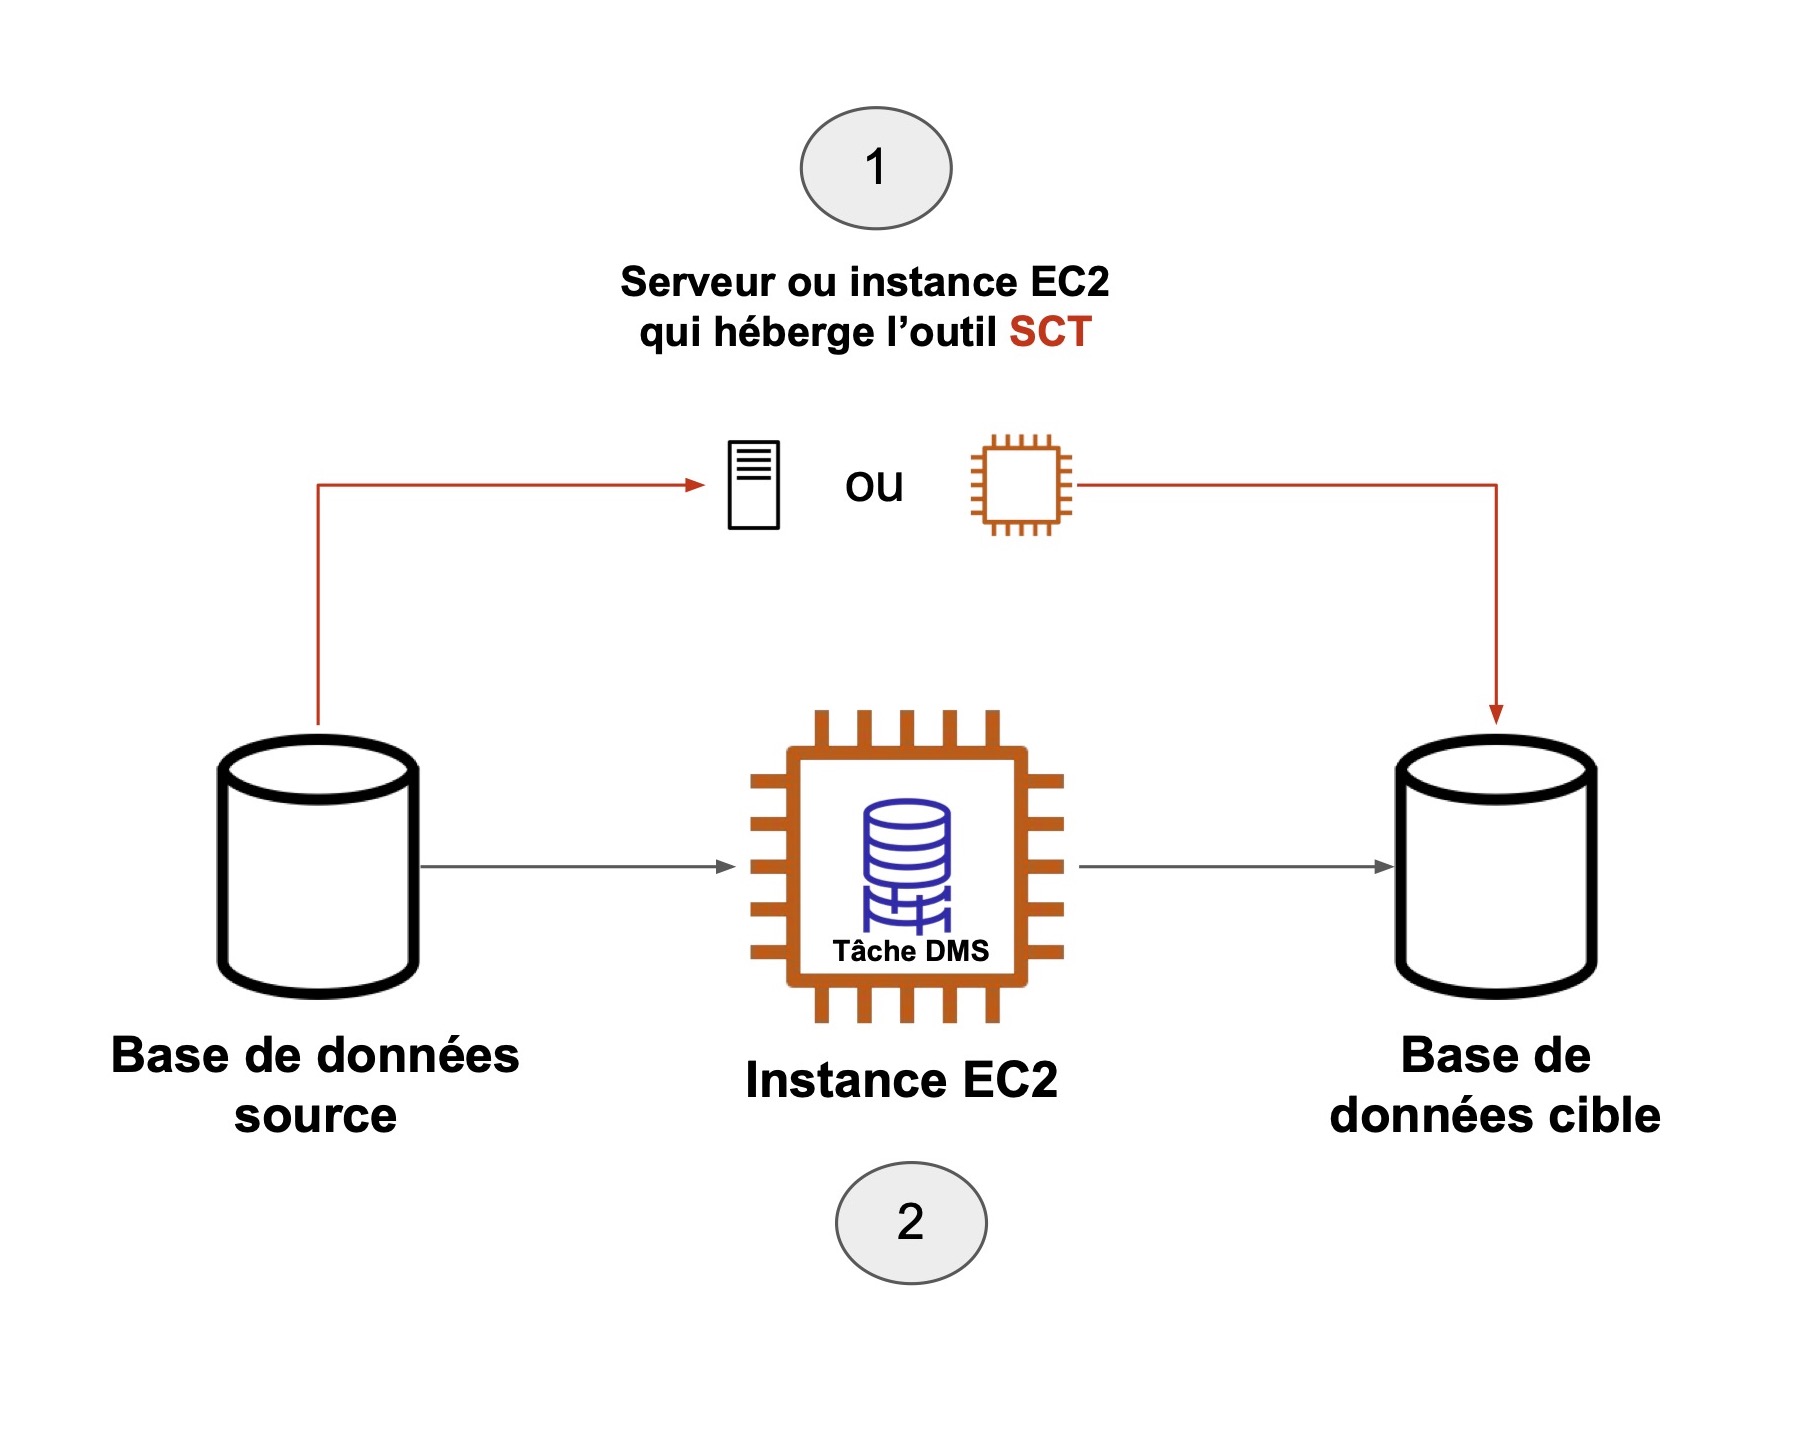 Un chèmin mene du serveur ou instance EC2 qui héberge l'outil SCT (1) vers la base de données cible, puis vers l'instance EC2 (2), puis vers la base de données source, et finit encore sur l'étape 1.